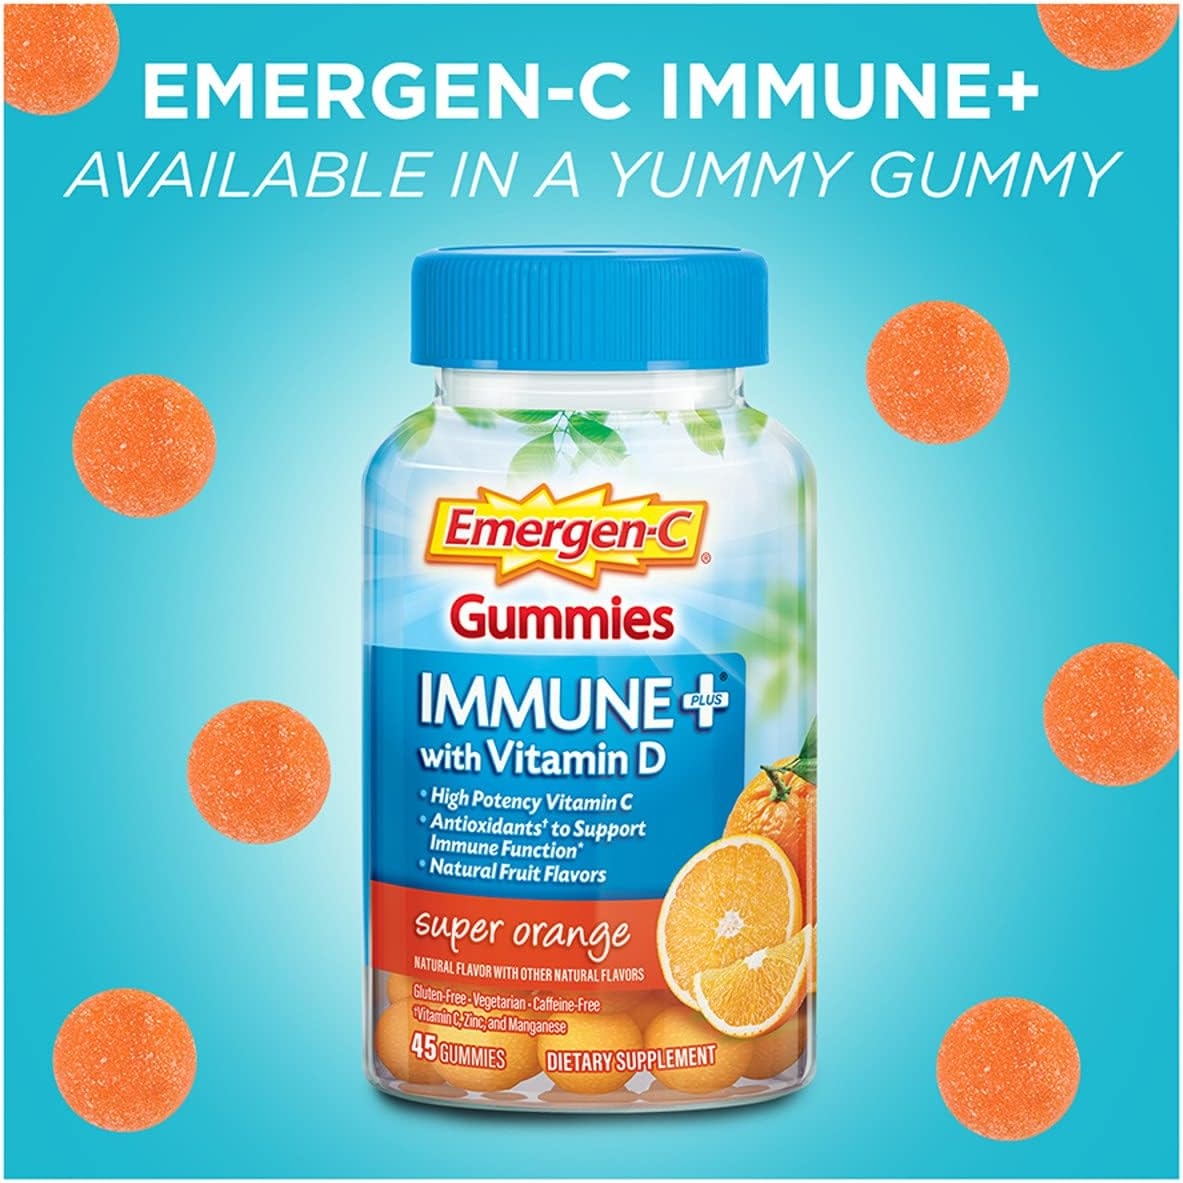 Emergen-C Immune+ Immune Gummies, Vitamin D plus 750 mg Vitamin C, Immune Support Dietary Supplement, Caffeine Free, Gluten Free, Raspberry Flavor - 45 Count